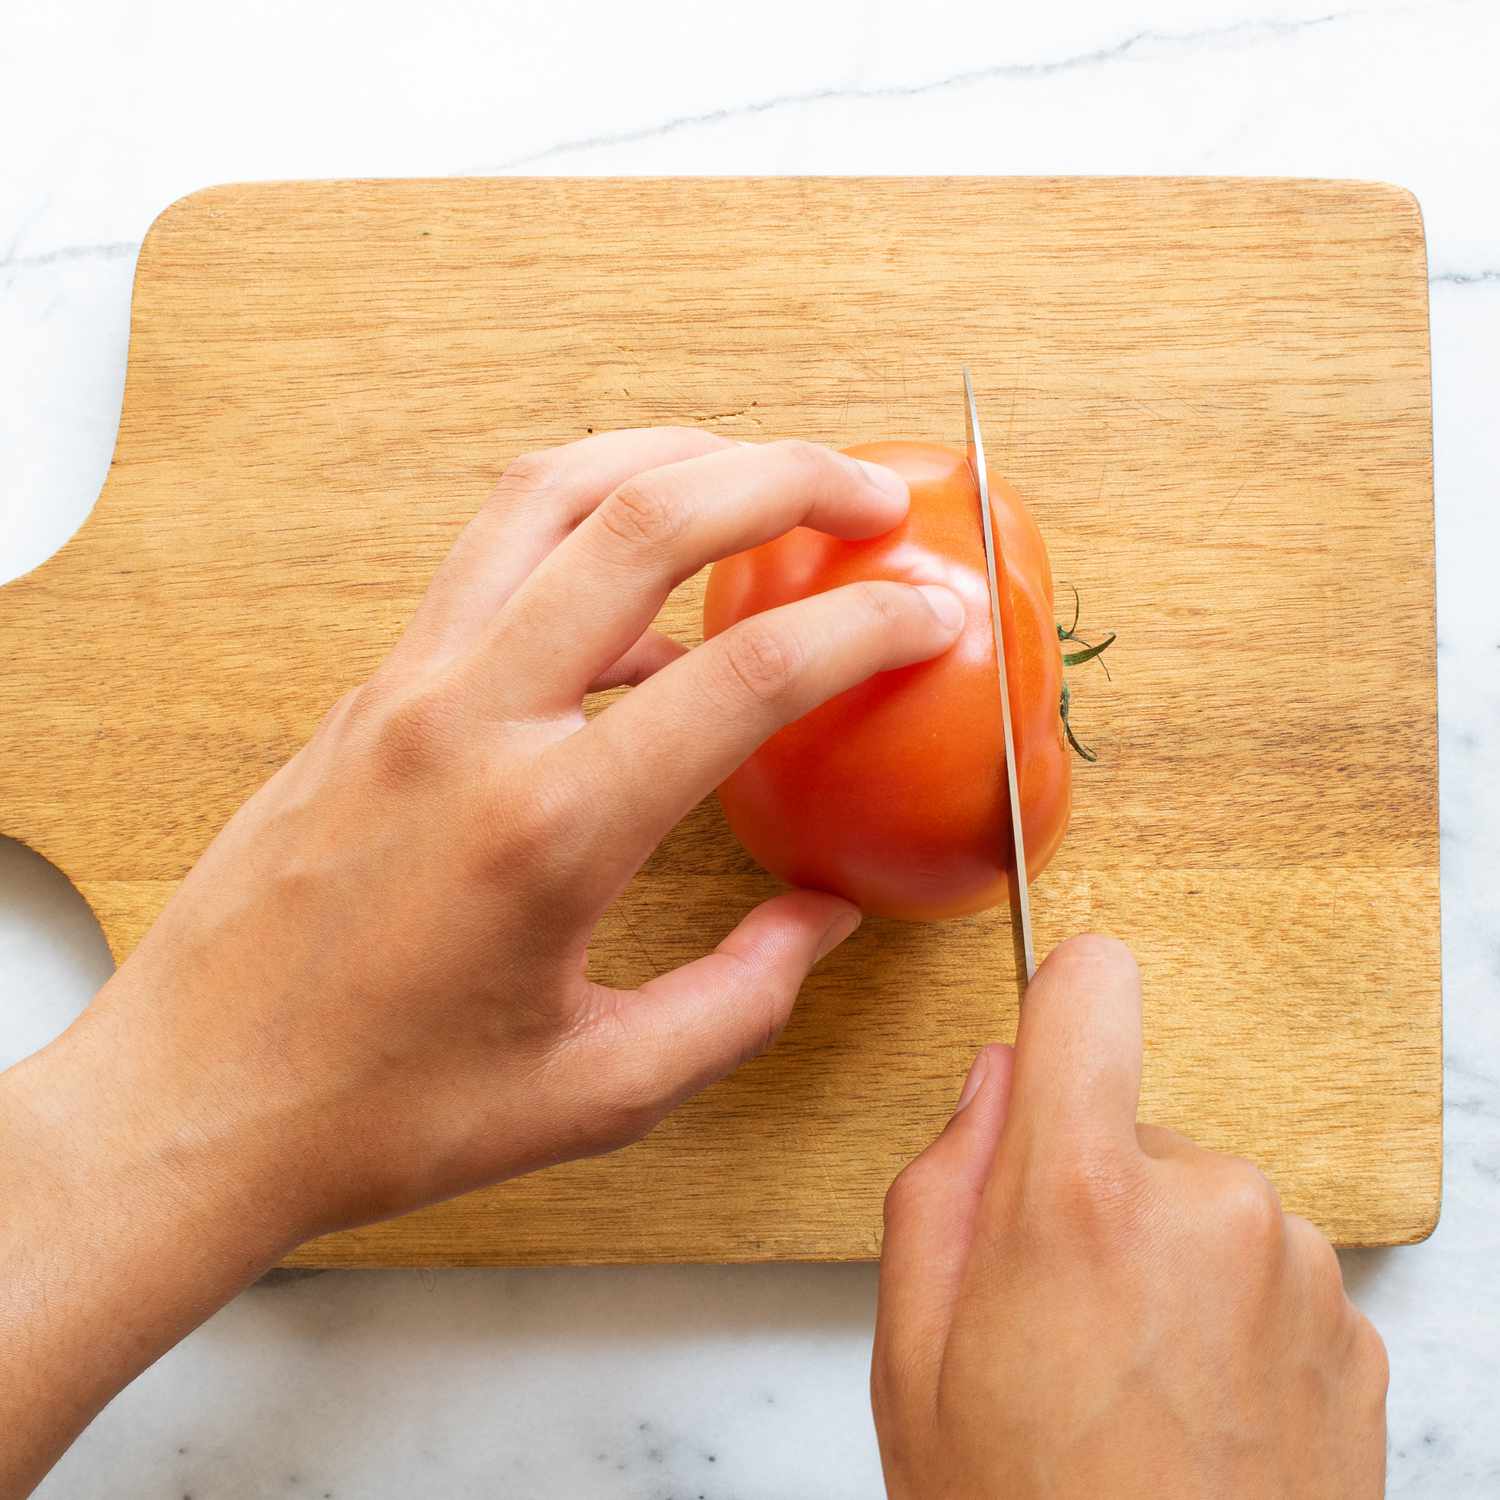 Mano usando un cuchillo para cortar tomates en una tabla para cortar